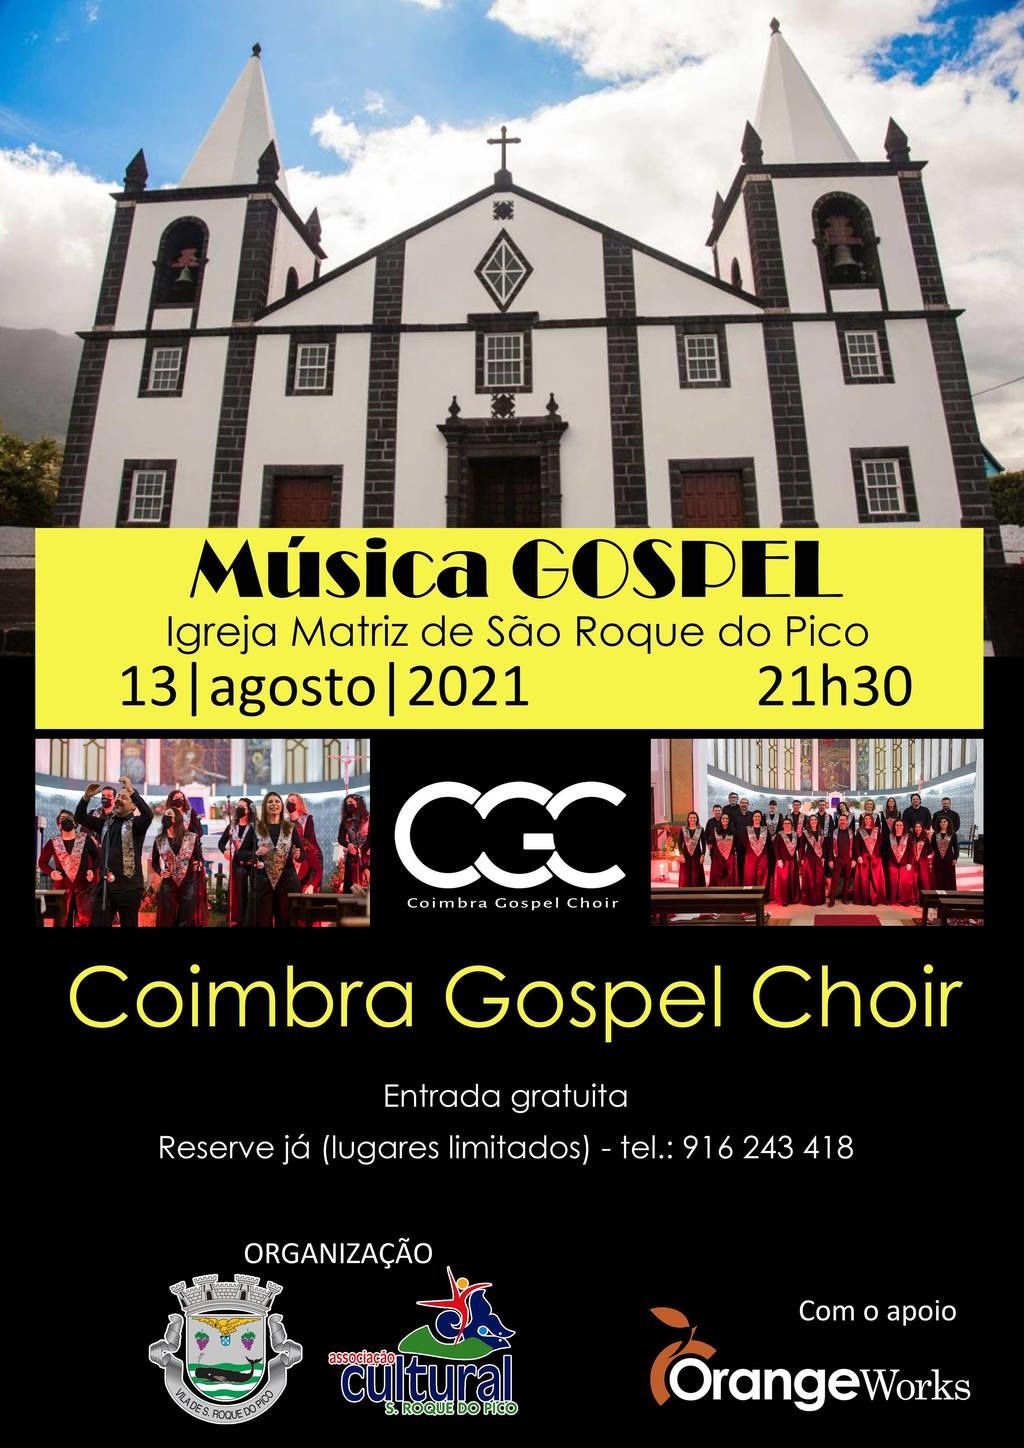 Concerto de música gospel na Matriz de São Roque do Pico